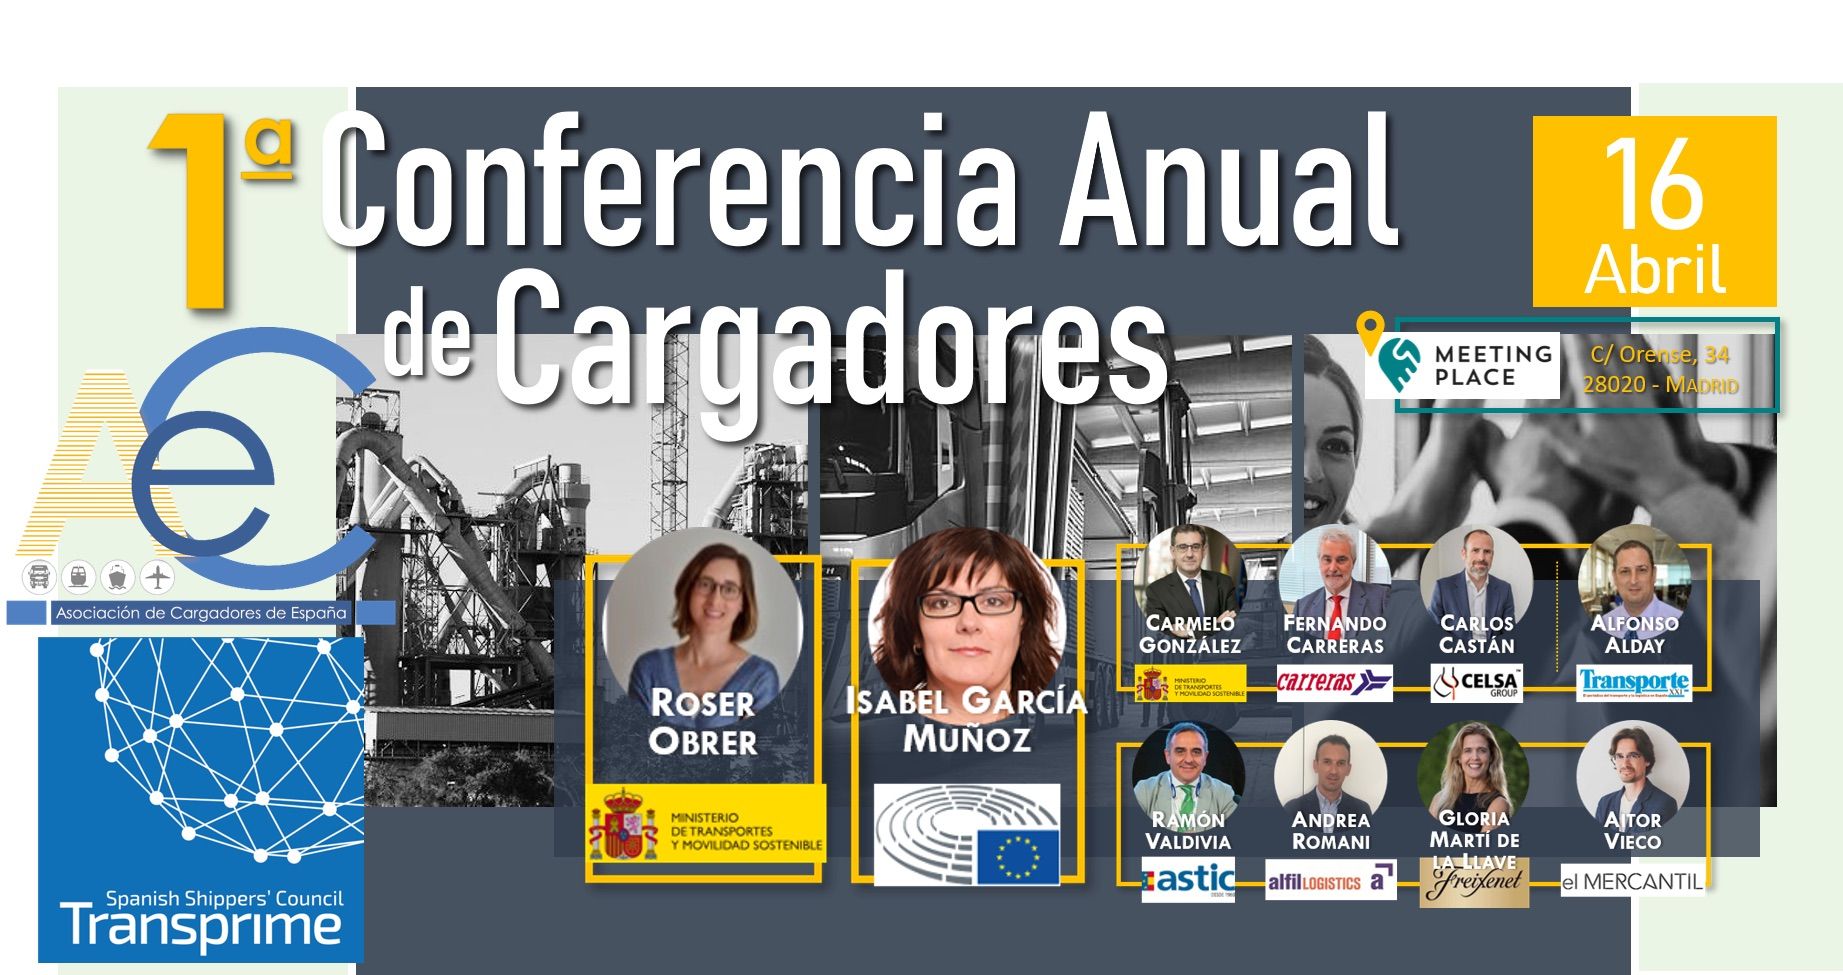 Conferencia anual cargadores